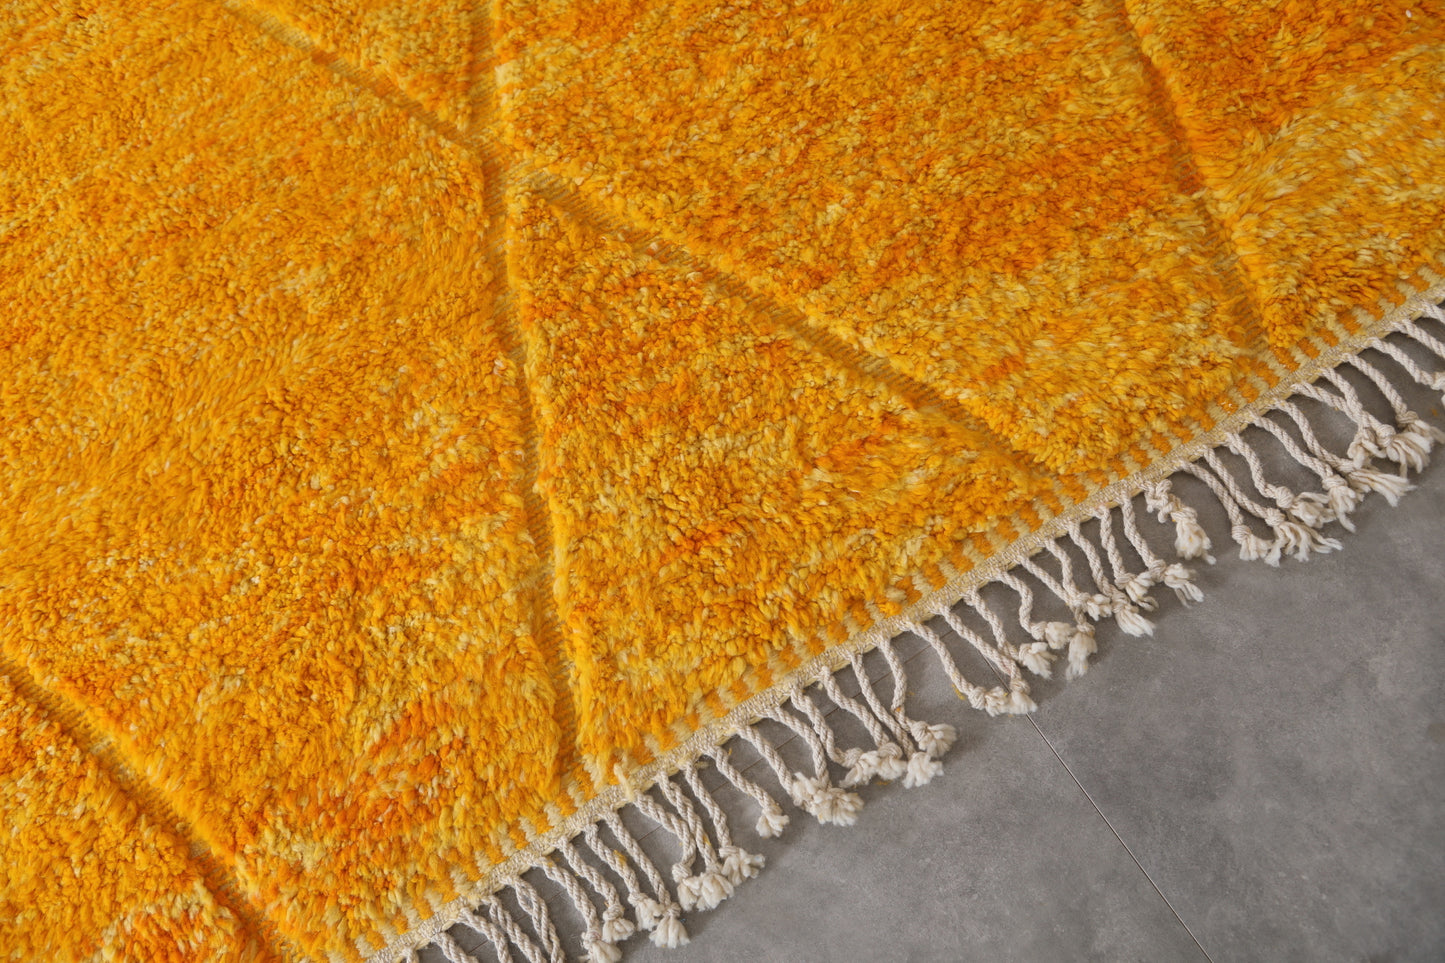 Custom Berber Yellow rug - Authentic handmade Beniourain rug